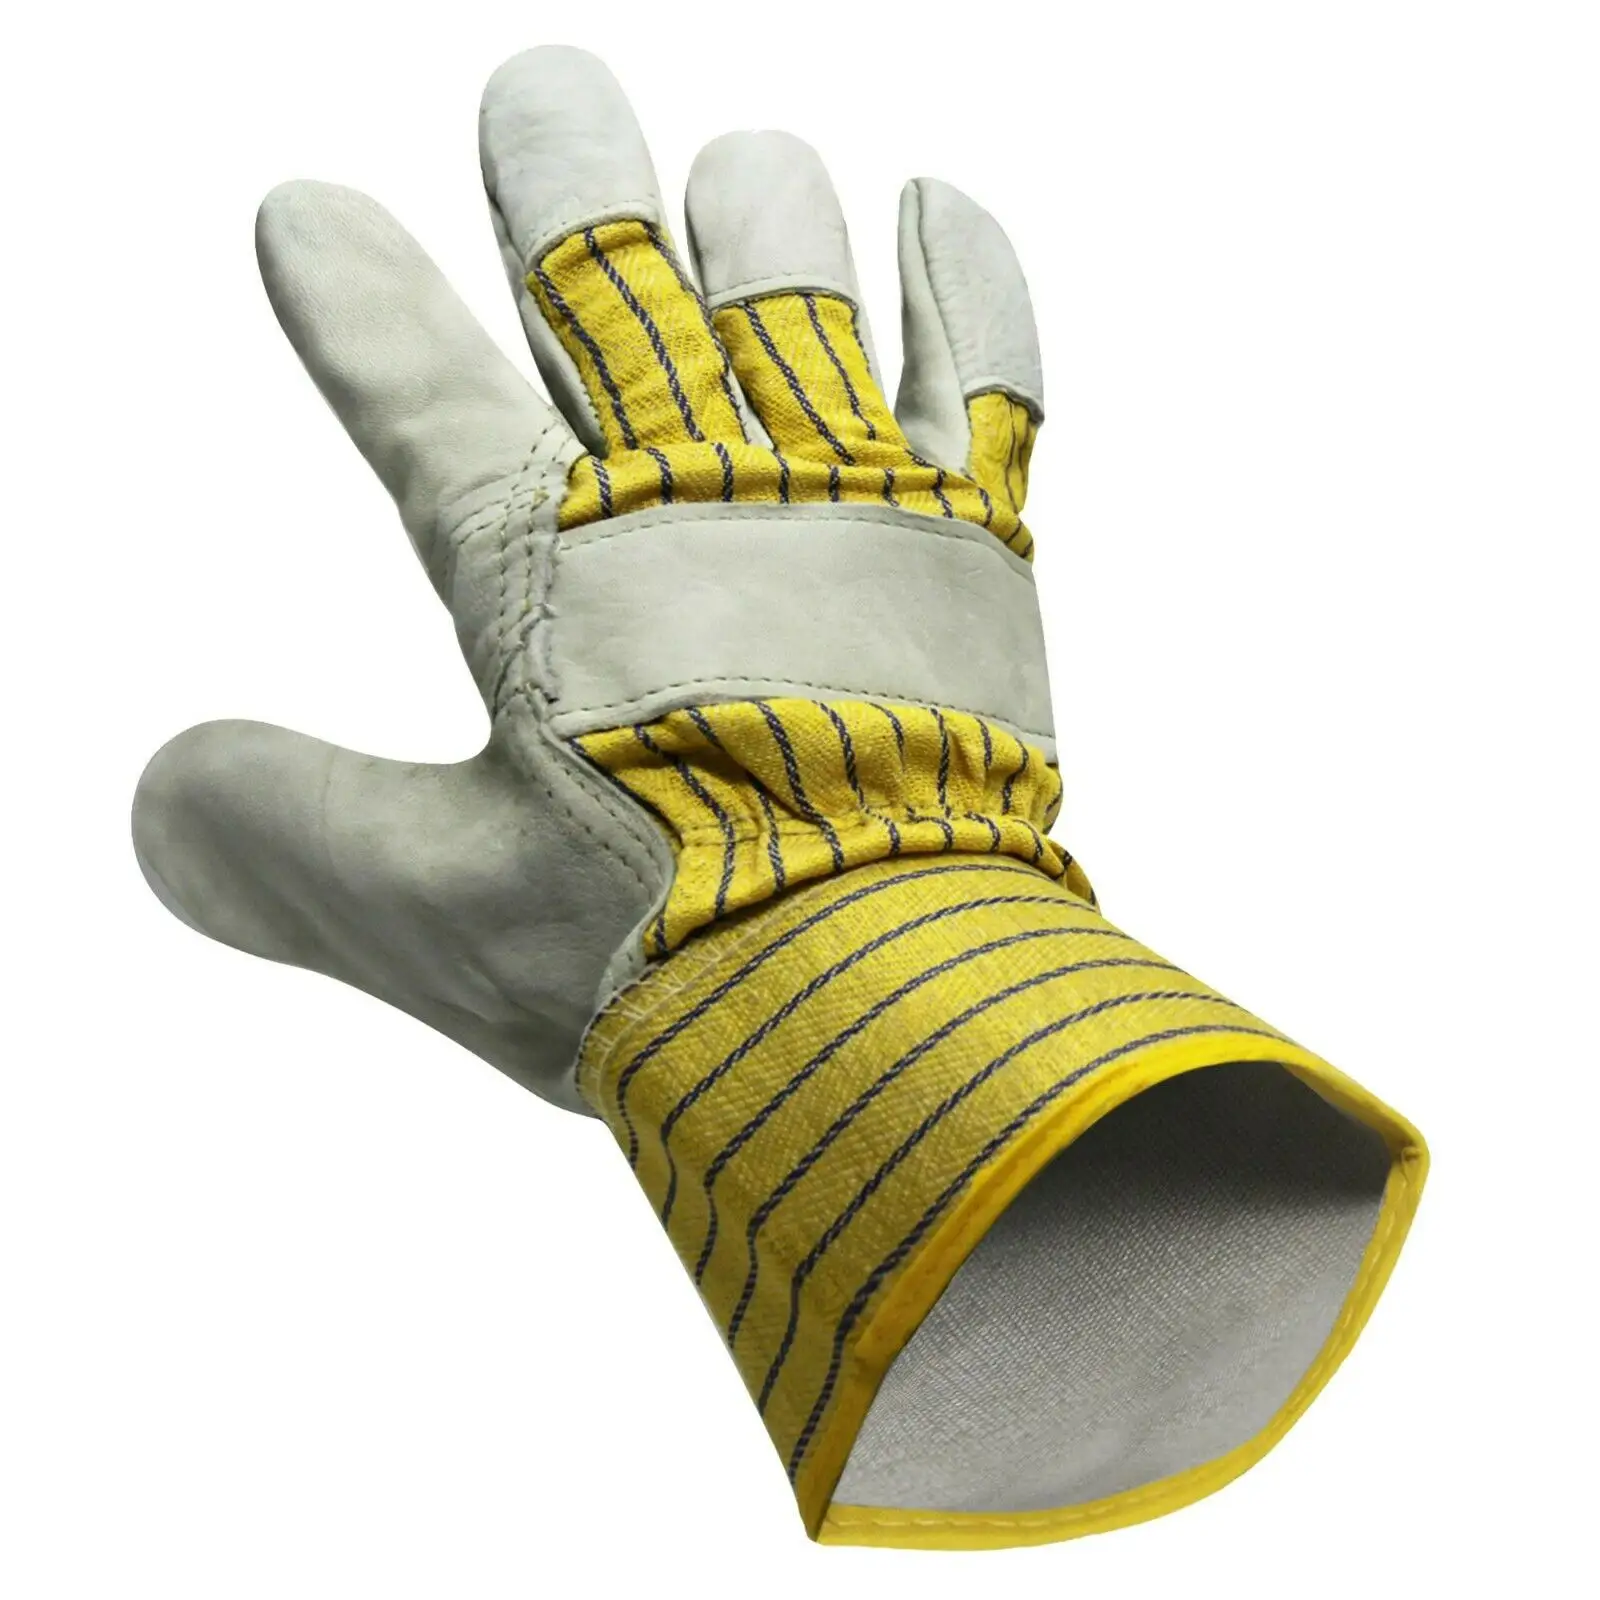 Veiligheid Handschoenen 10 Inch Koe Split Lederen Werk Driver Tuin Lassen Handschoenen Multifunctionele Warmte Bescherming Handschoenen Op Goedkope Prijzen